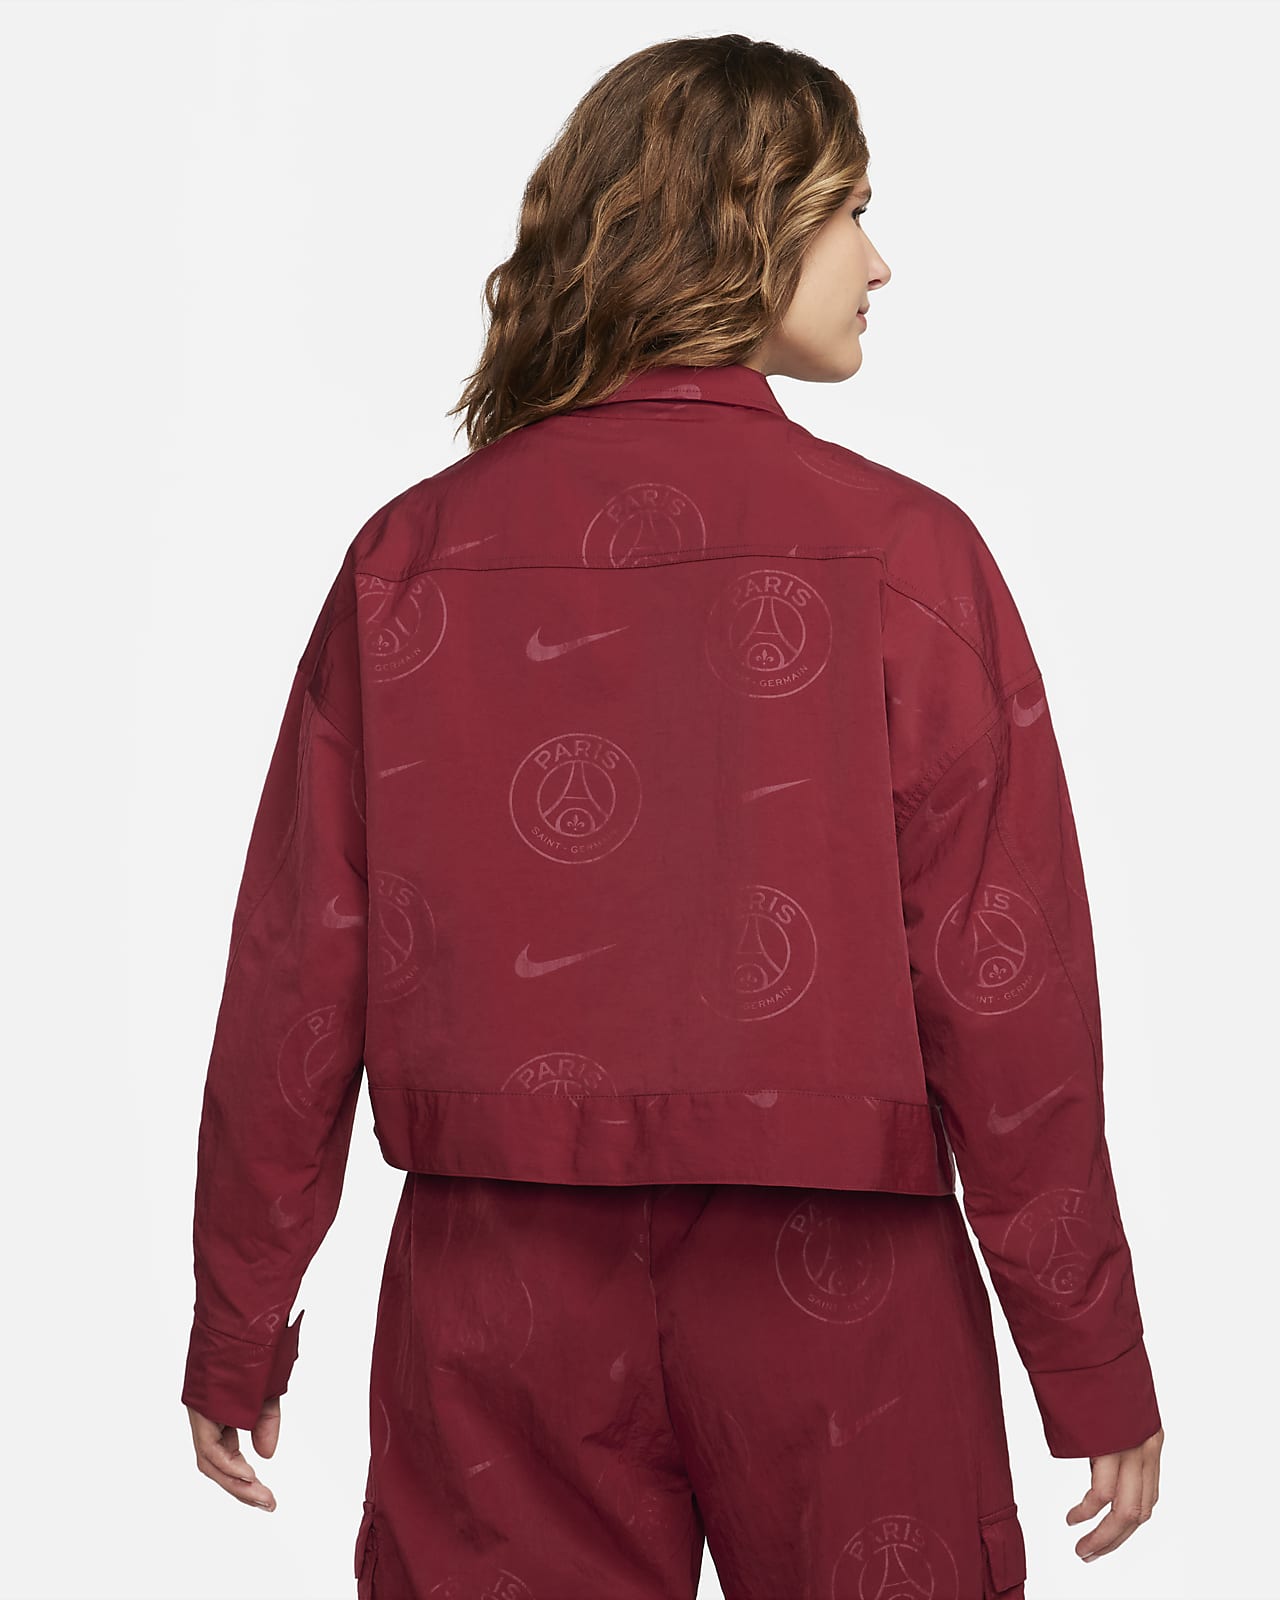 Paris Saint-Germain Essential Women's Nike Woven Graphic Jacket